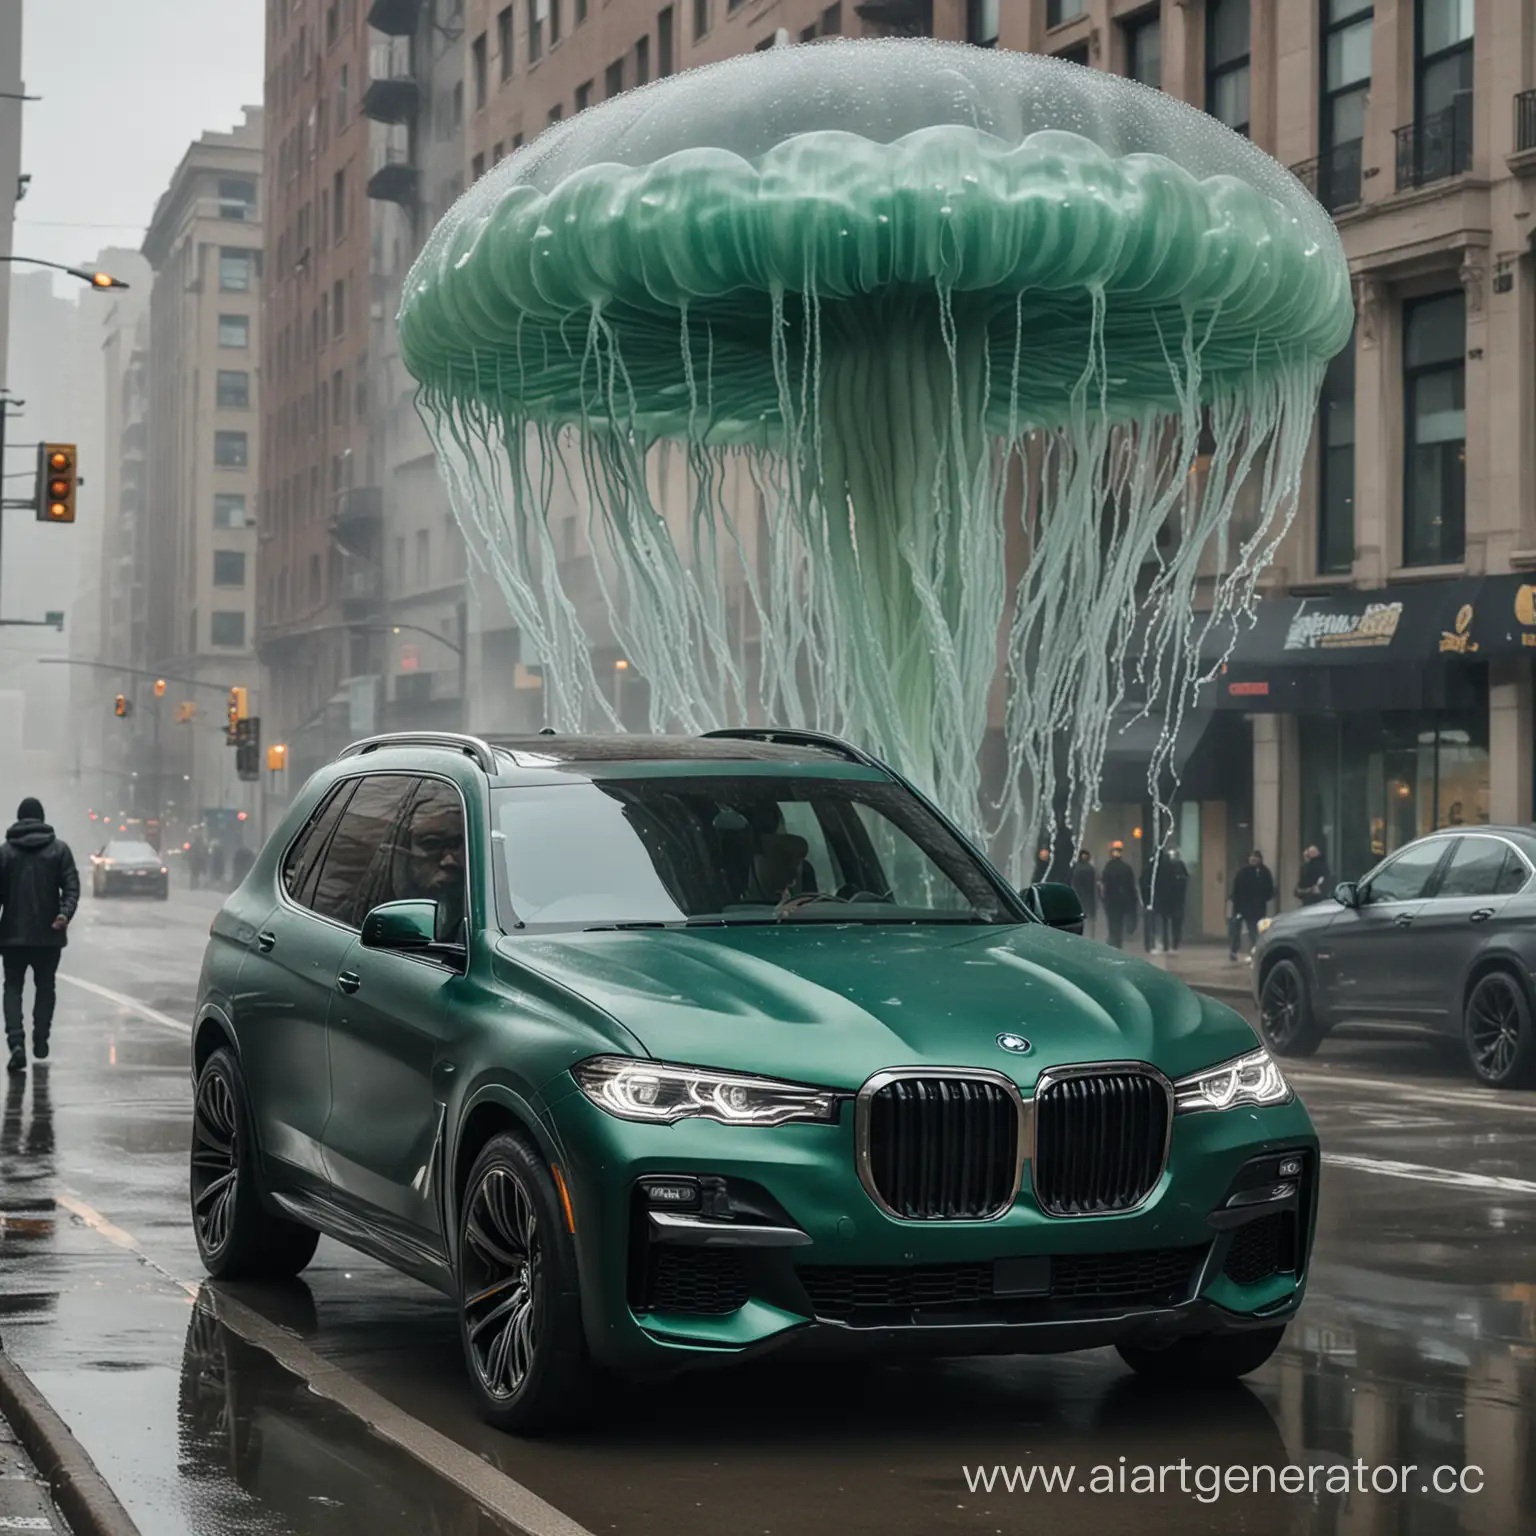 Майк Тайсон с медузой едет в матовом изумрудном BMW X7 по пасмурному городу